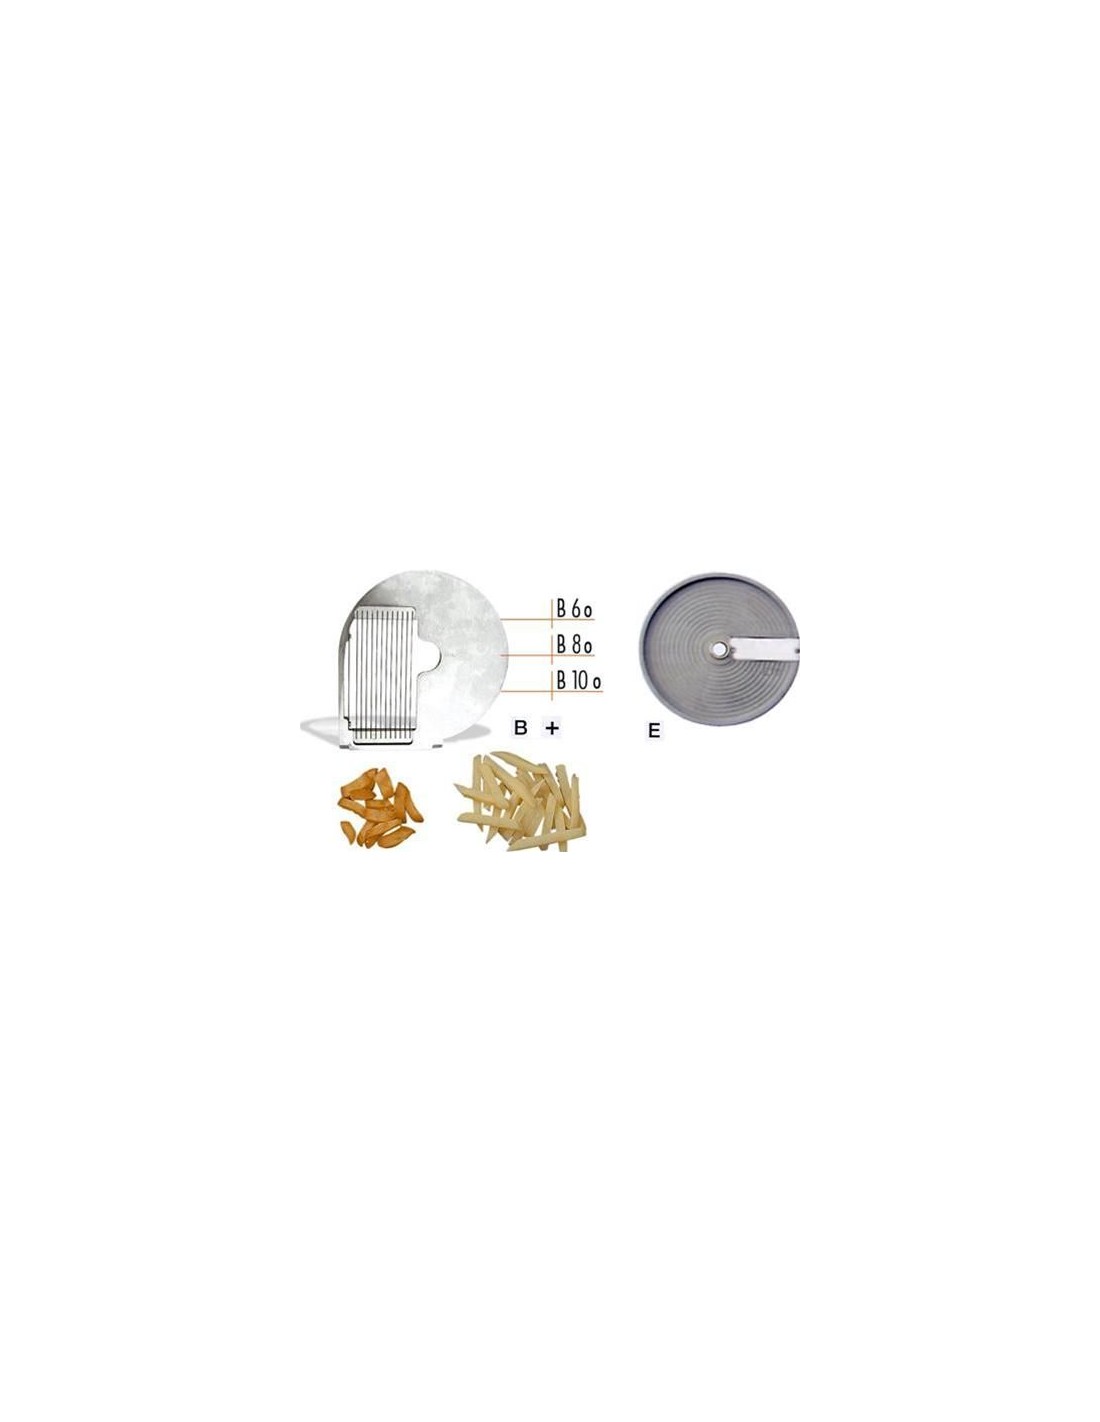 Disco tagliaverdura - per modello Chef - per BASTONCINI ONDULATI - Taglio spessore mm 8 - ondulato - da usare con disco CE-E(cod